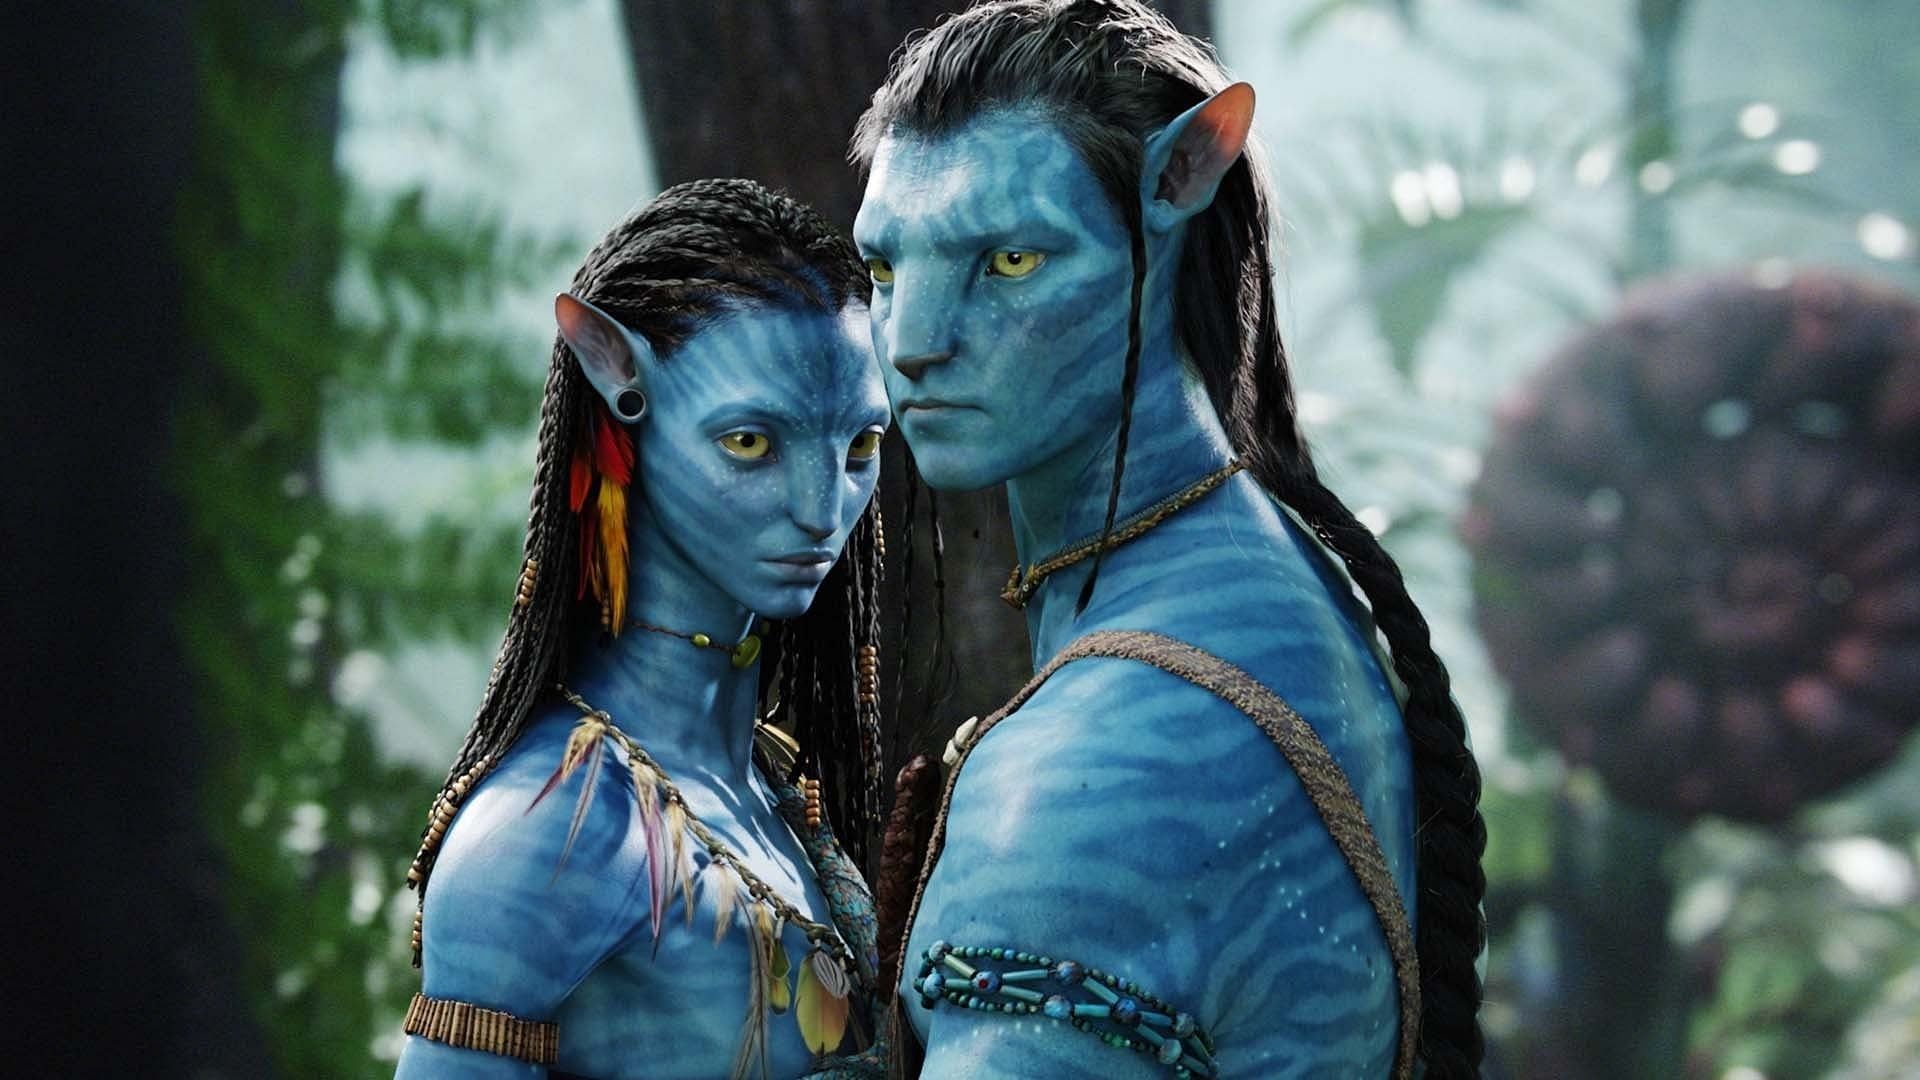 Jake and Neytiri in Avatar (Image via 20th Century Studios)